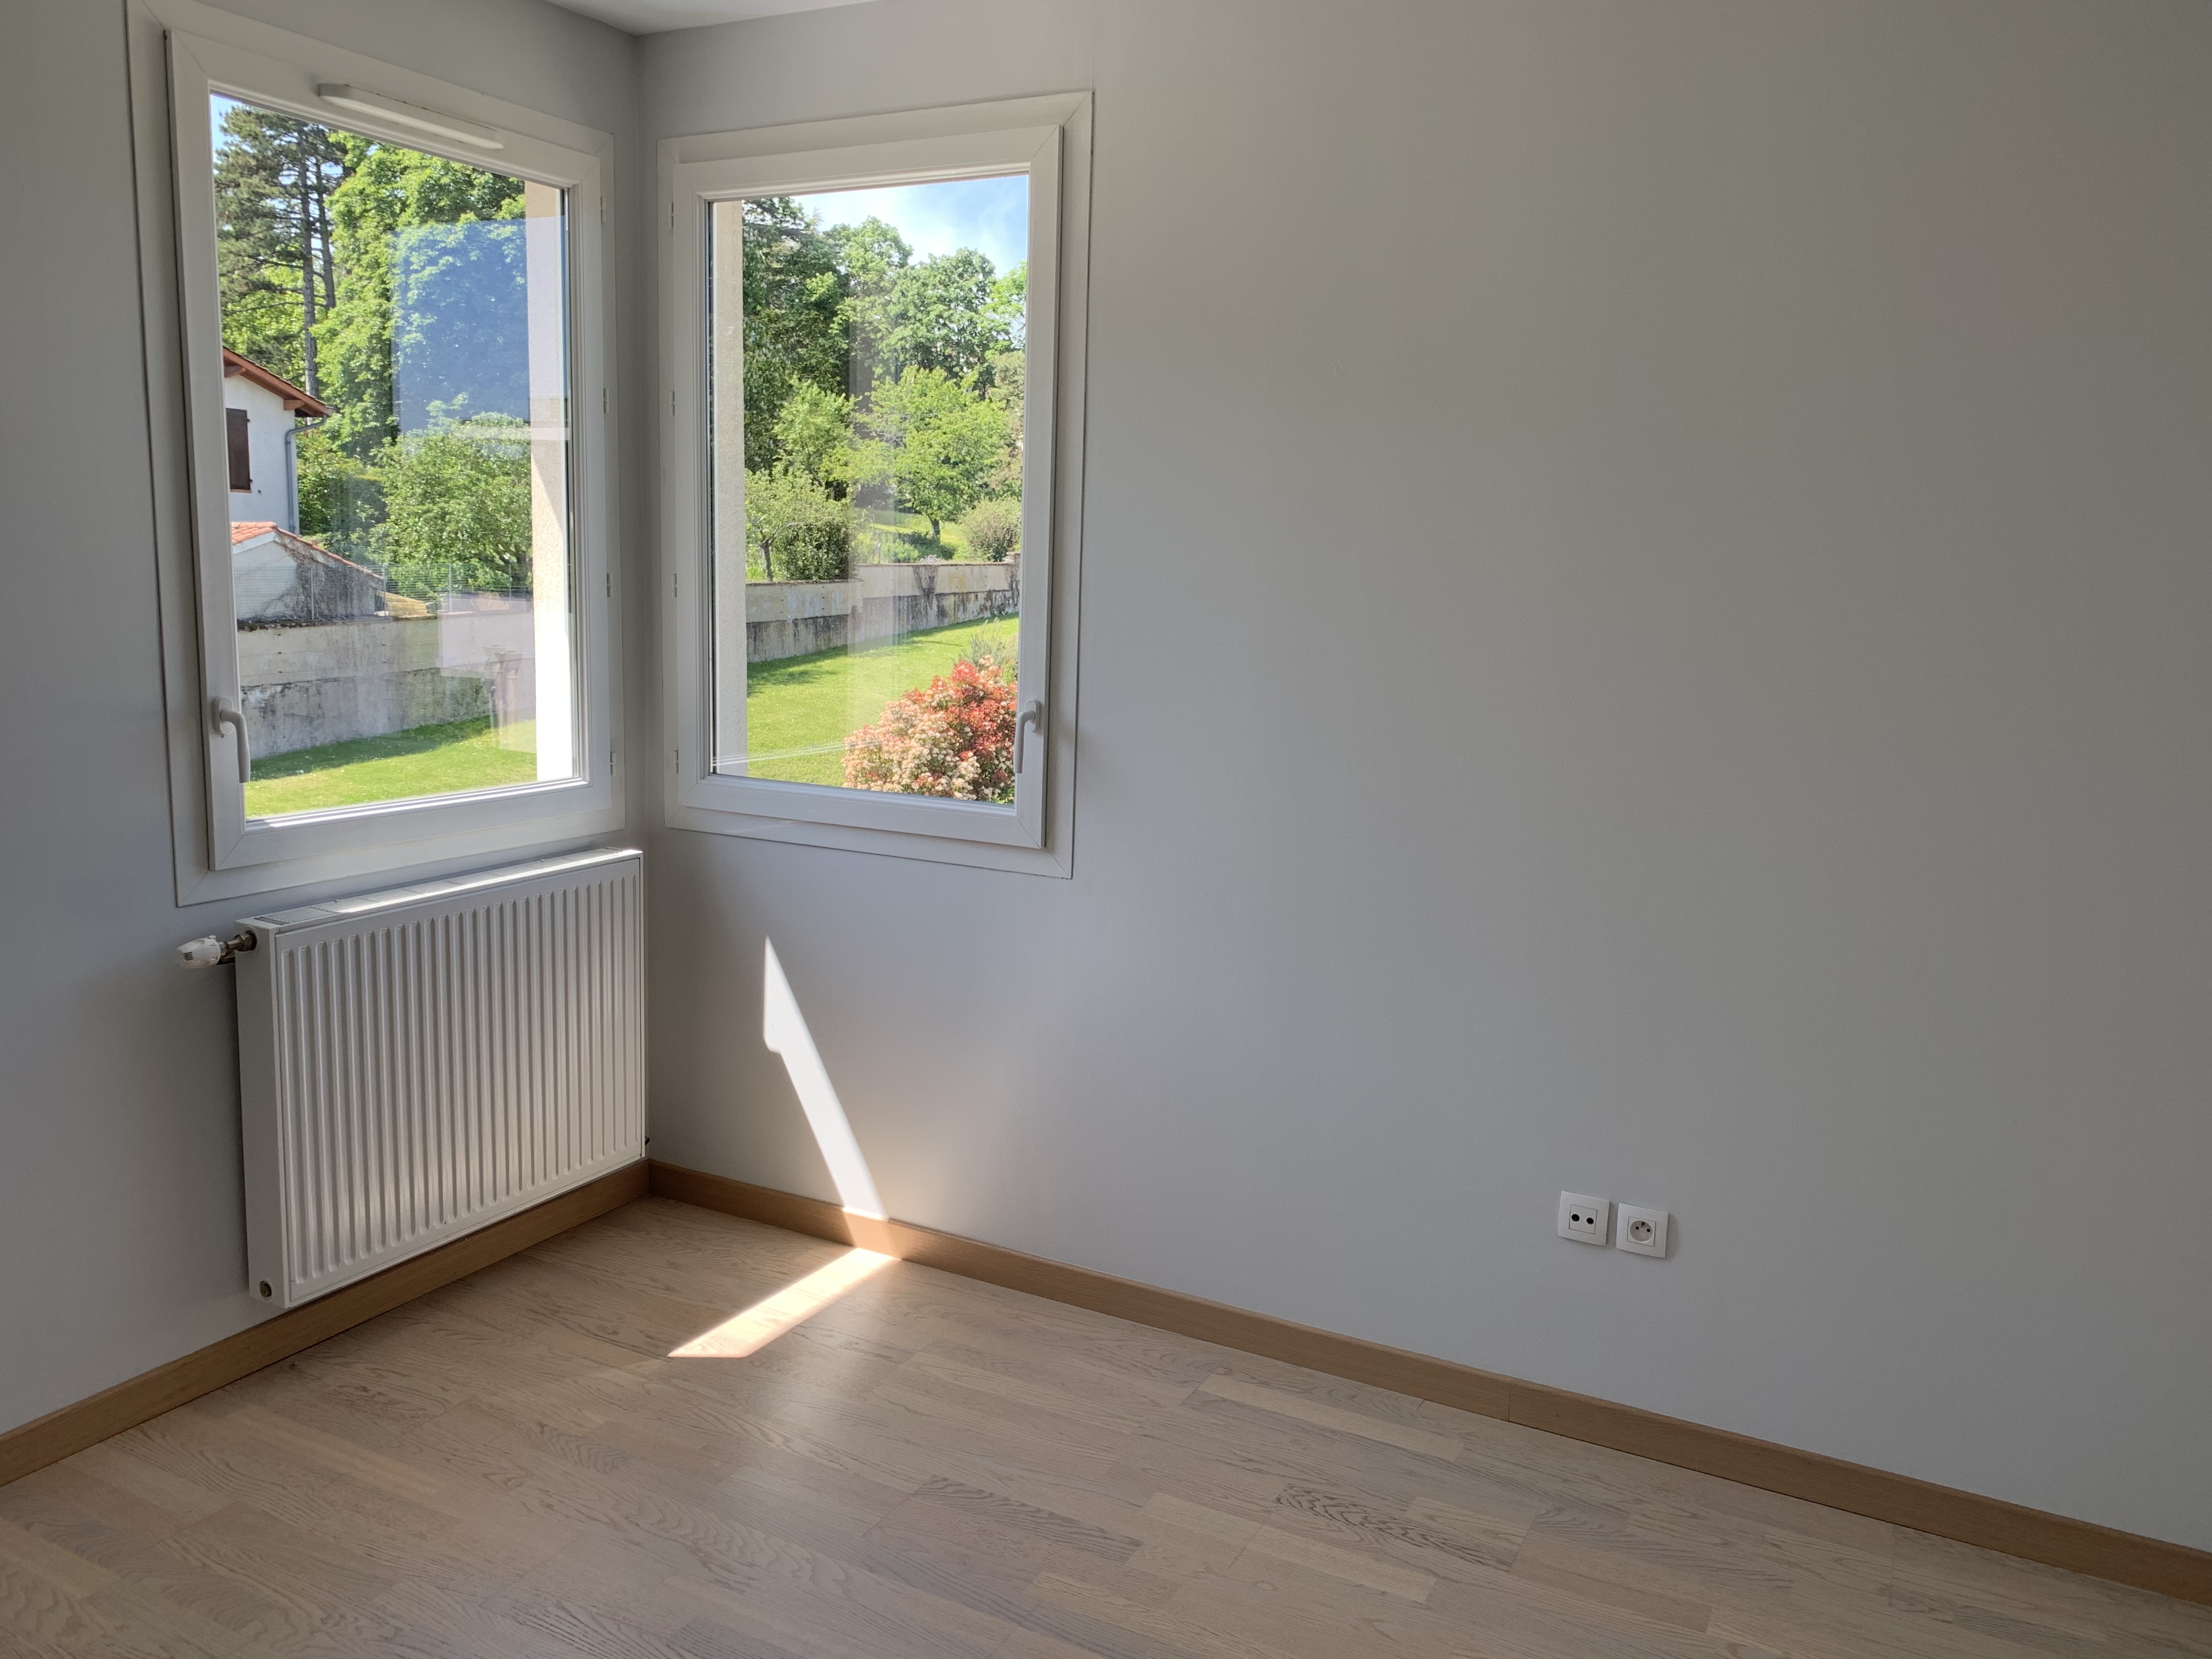 PropriLib l’agence immobilière en ligne à prix fixe vend cet appartement à Charbonnières-les-Bains